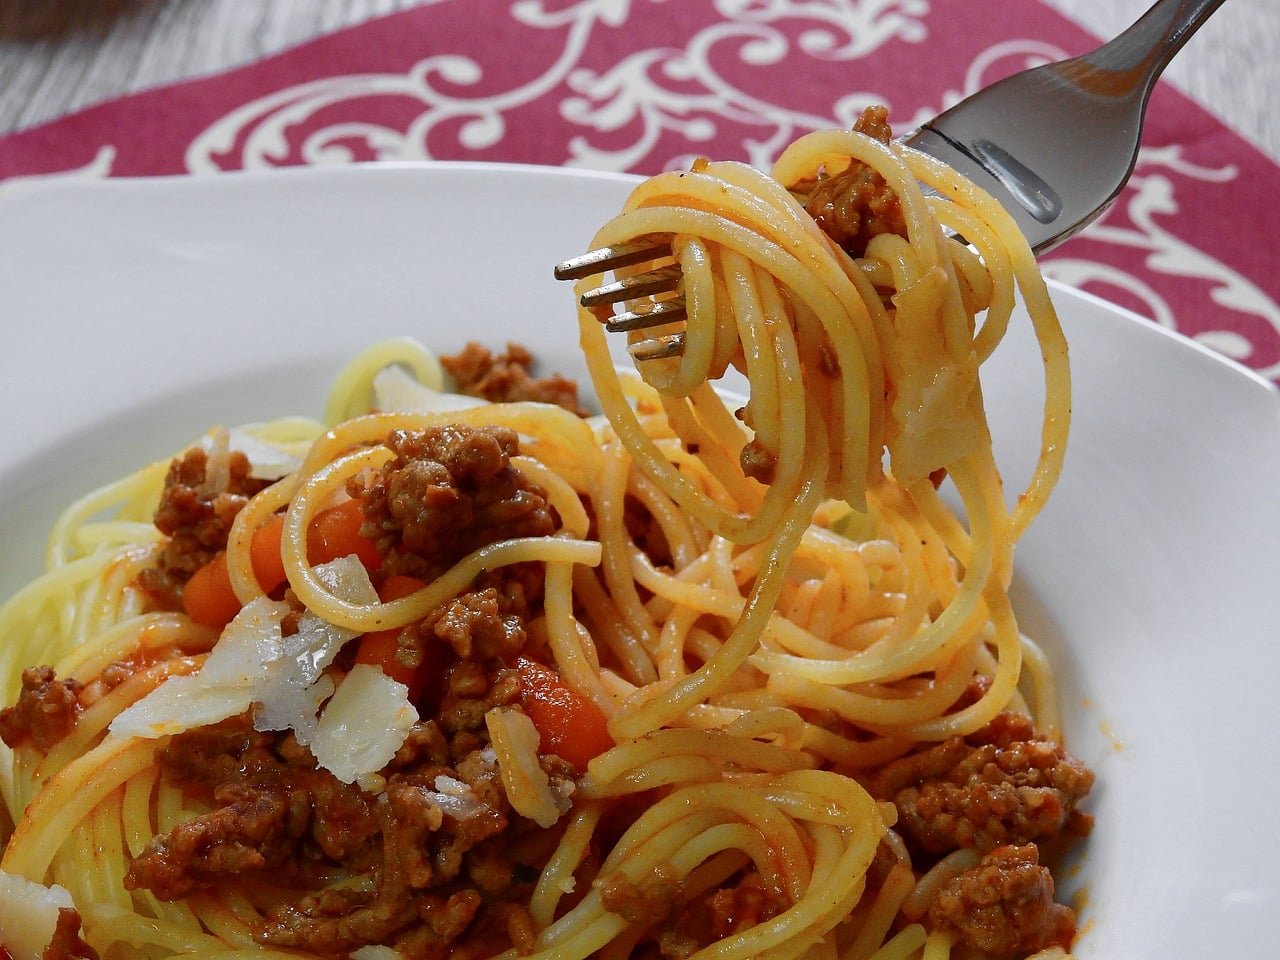 main ingredient in gluten-free pasta